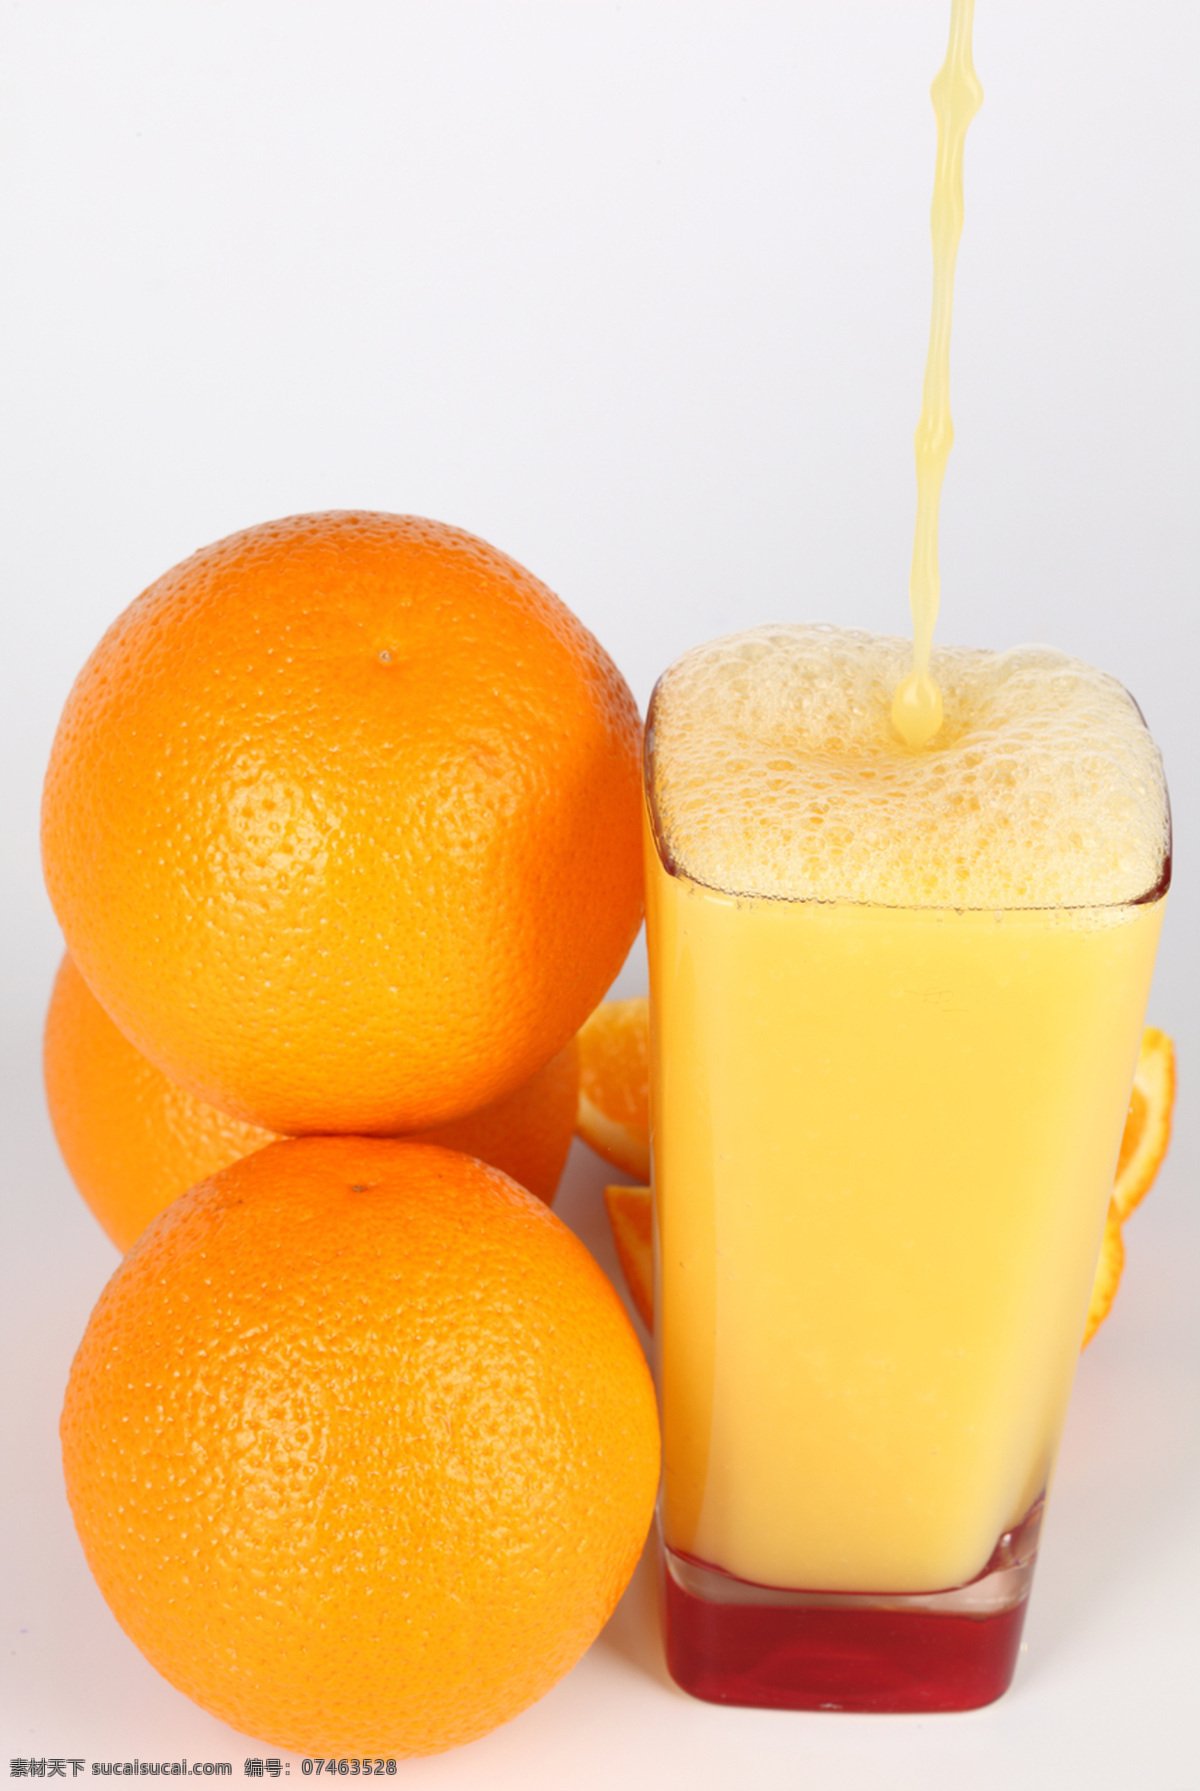 鲜橙汁 餐饮美食 橙 橙汁 橙子 柑橘 果汁 桔子 水果 饮料酒水 psd源文件 餐饮素材